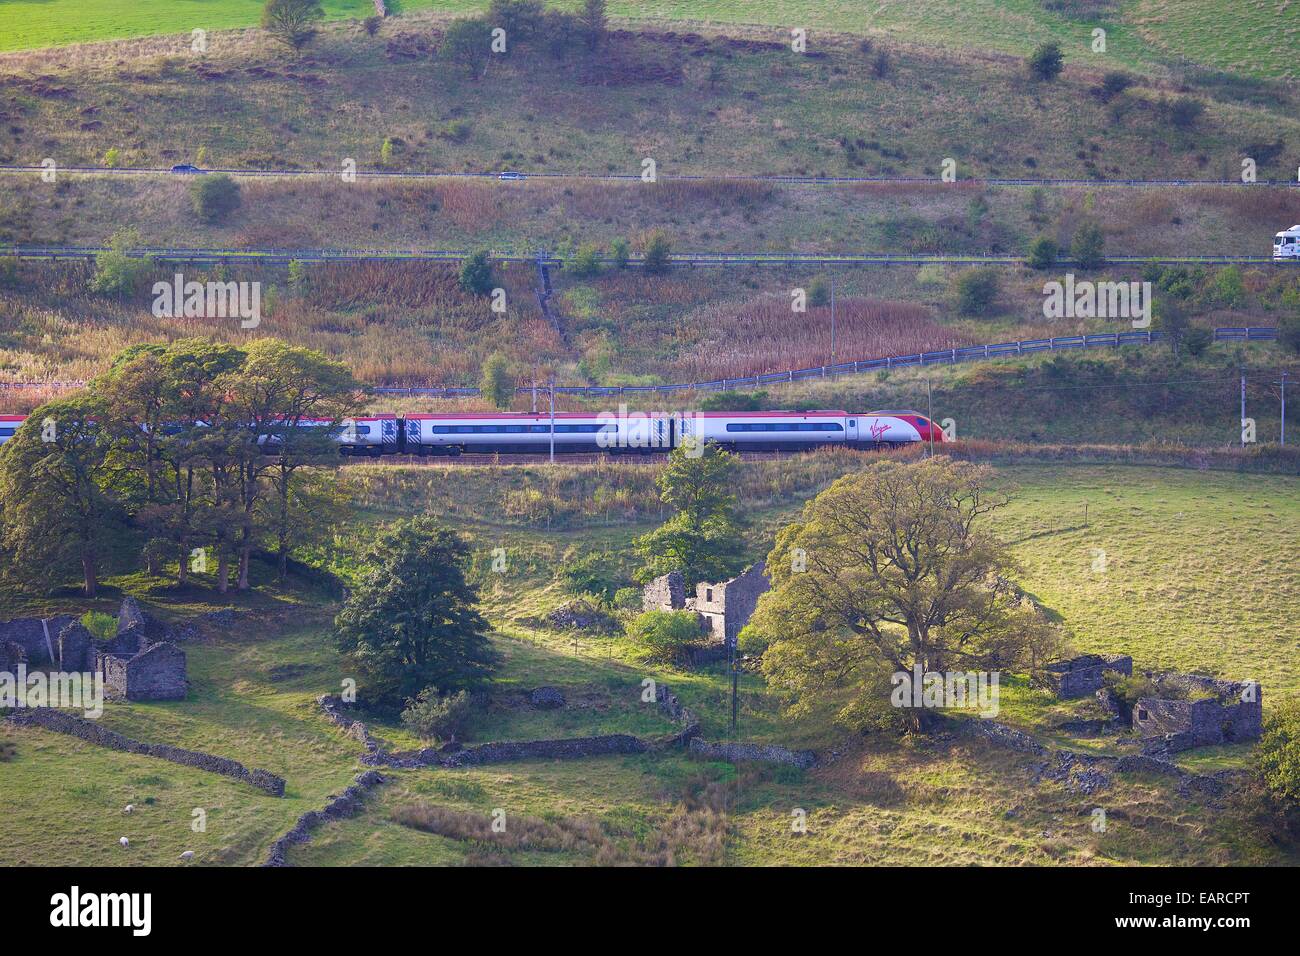 Class 390 Pendolino Virgin train près de Rivière lune, lune, vallée de Tebay, Cumbria, Angleterre, Royaume-Uni. Banque D'Images